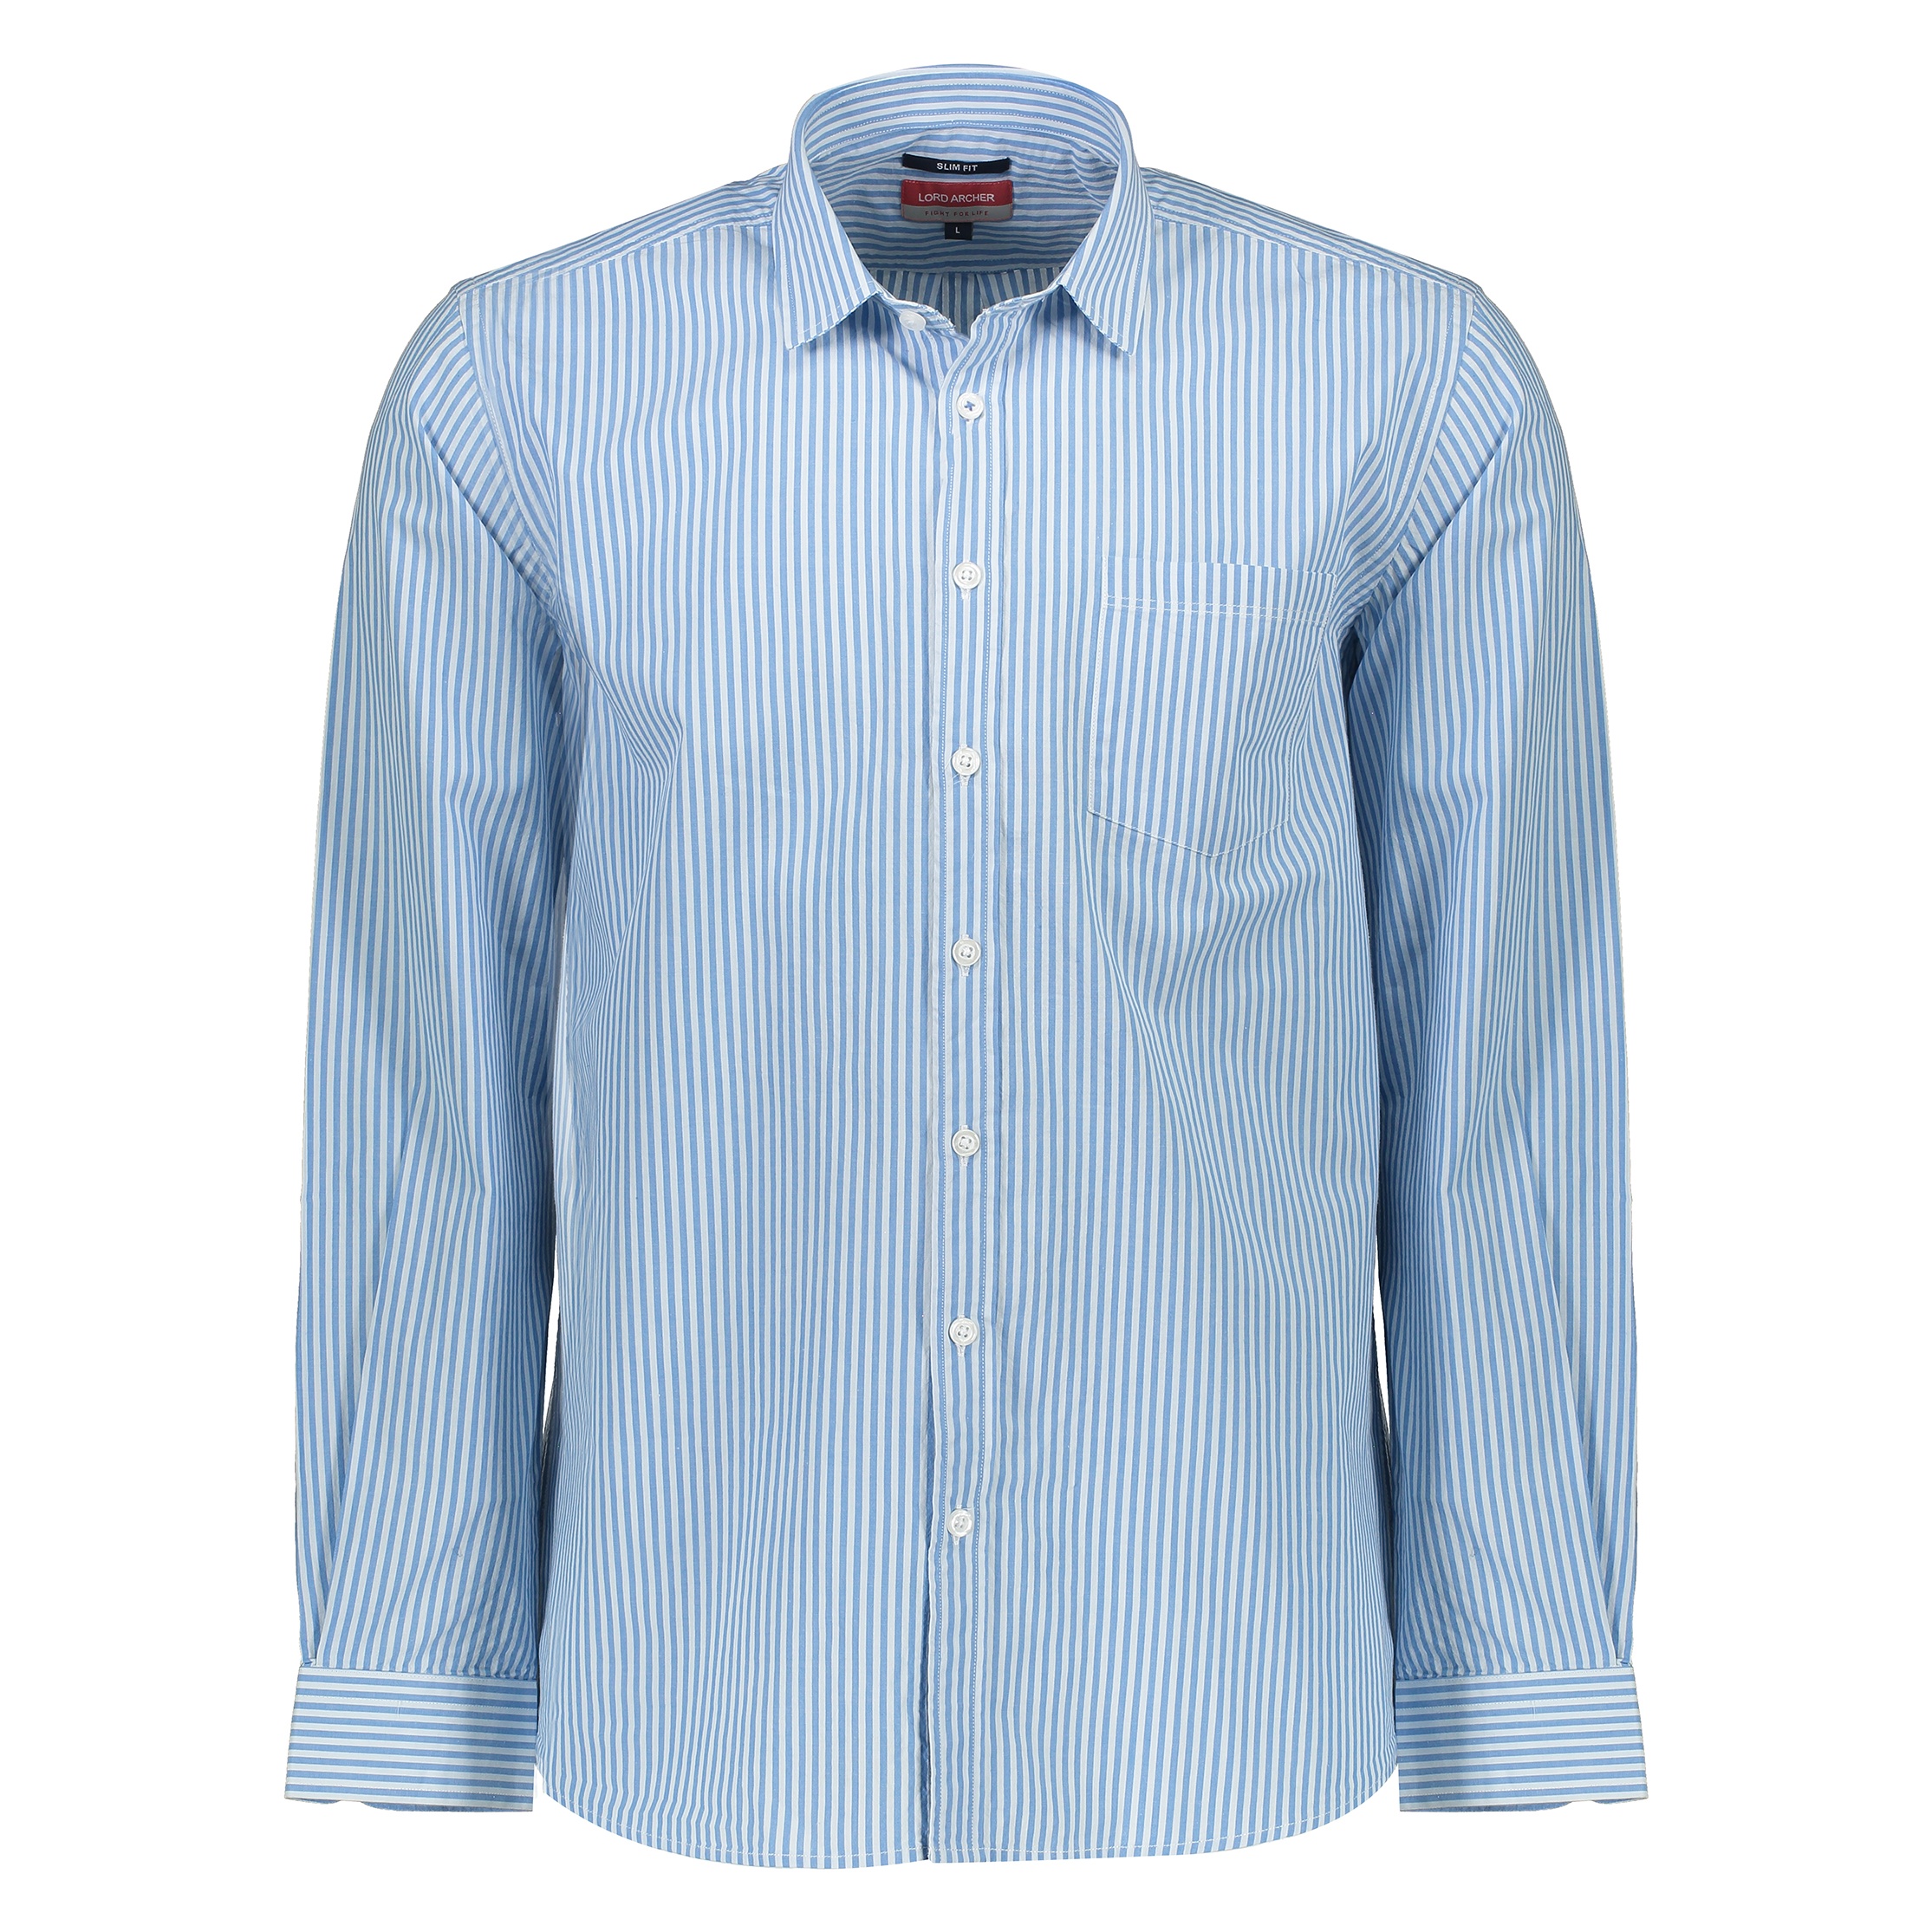 پیراهن مردانه لرد آرچر مدل 20011425101 - آبی سفید - 1